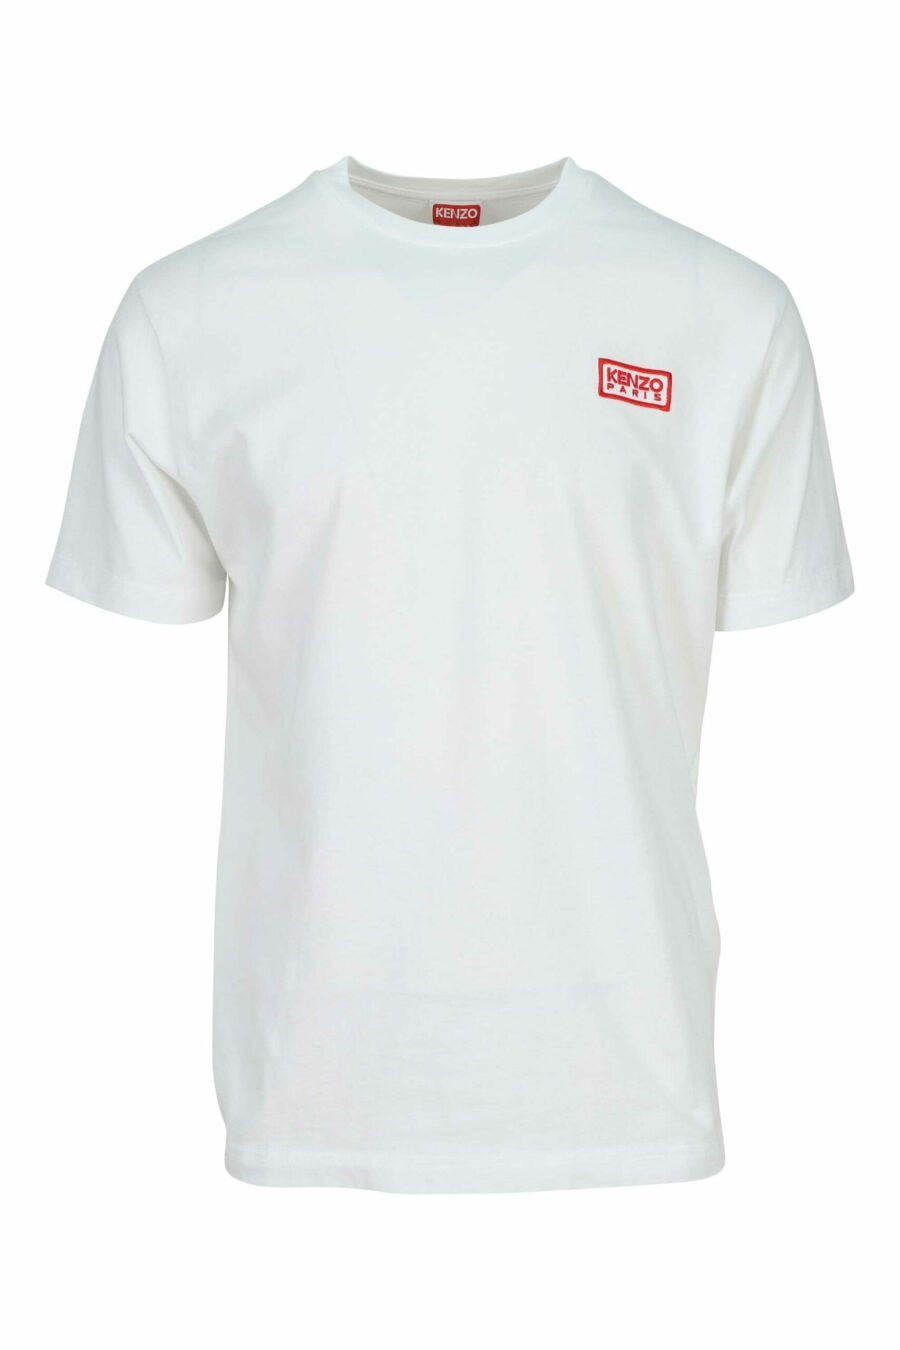 Camiseta blanca con minilogo "KP classic" - 3612230624641 2 scaled